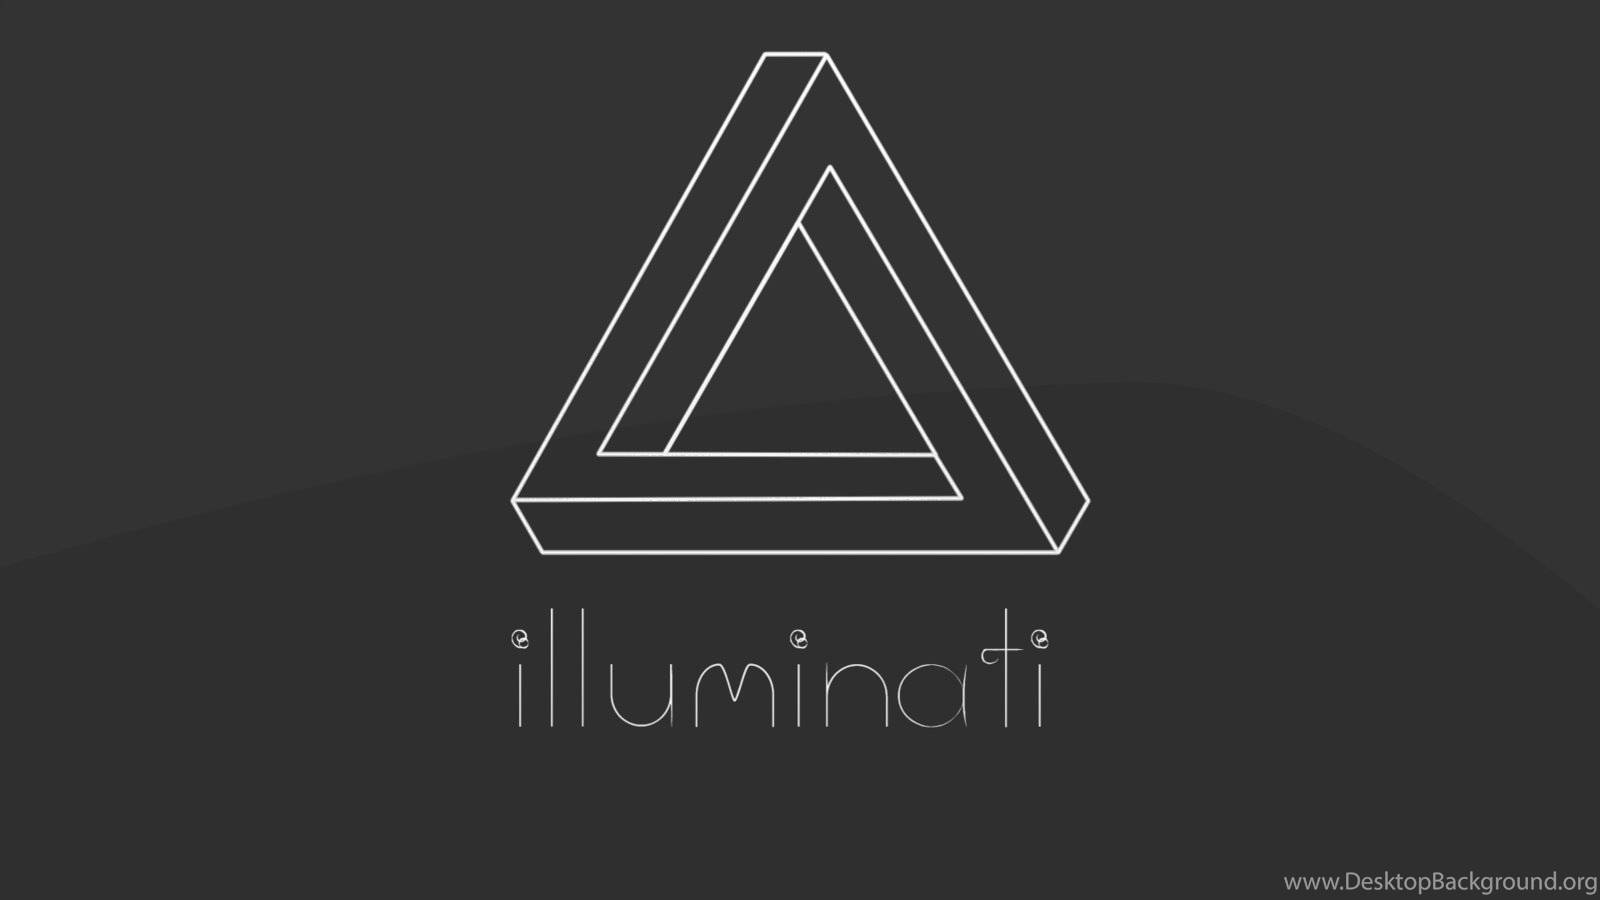 Illuminati Infinite Triangle Wallpaper